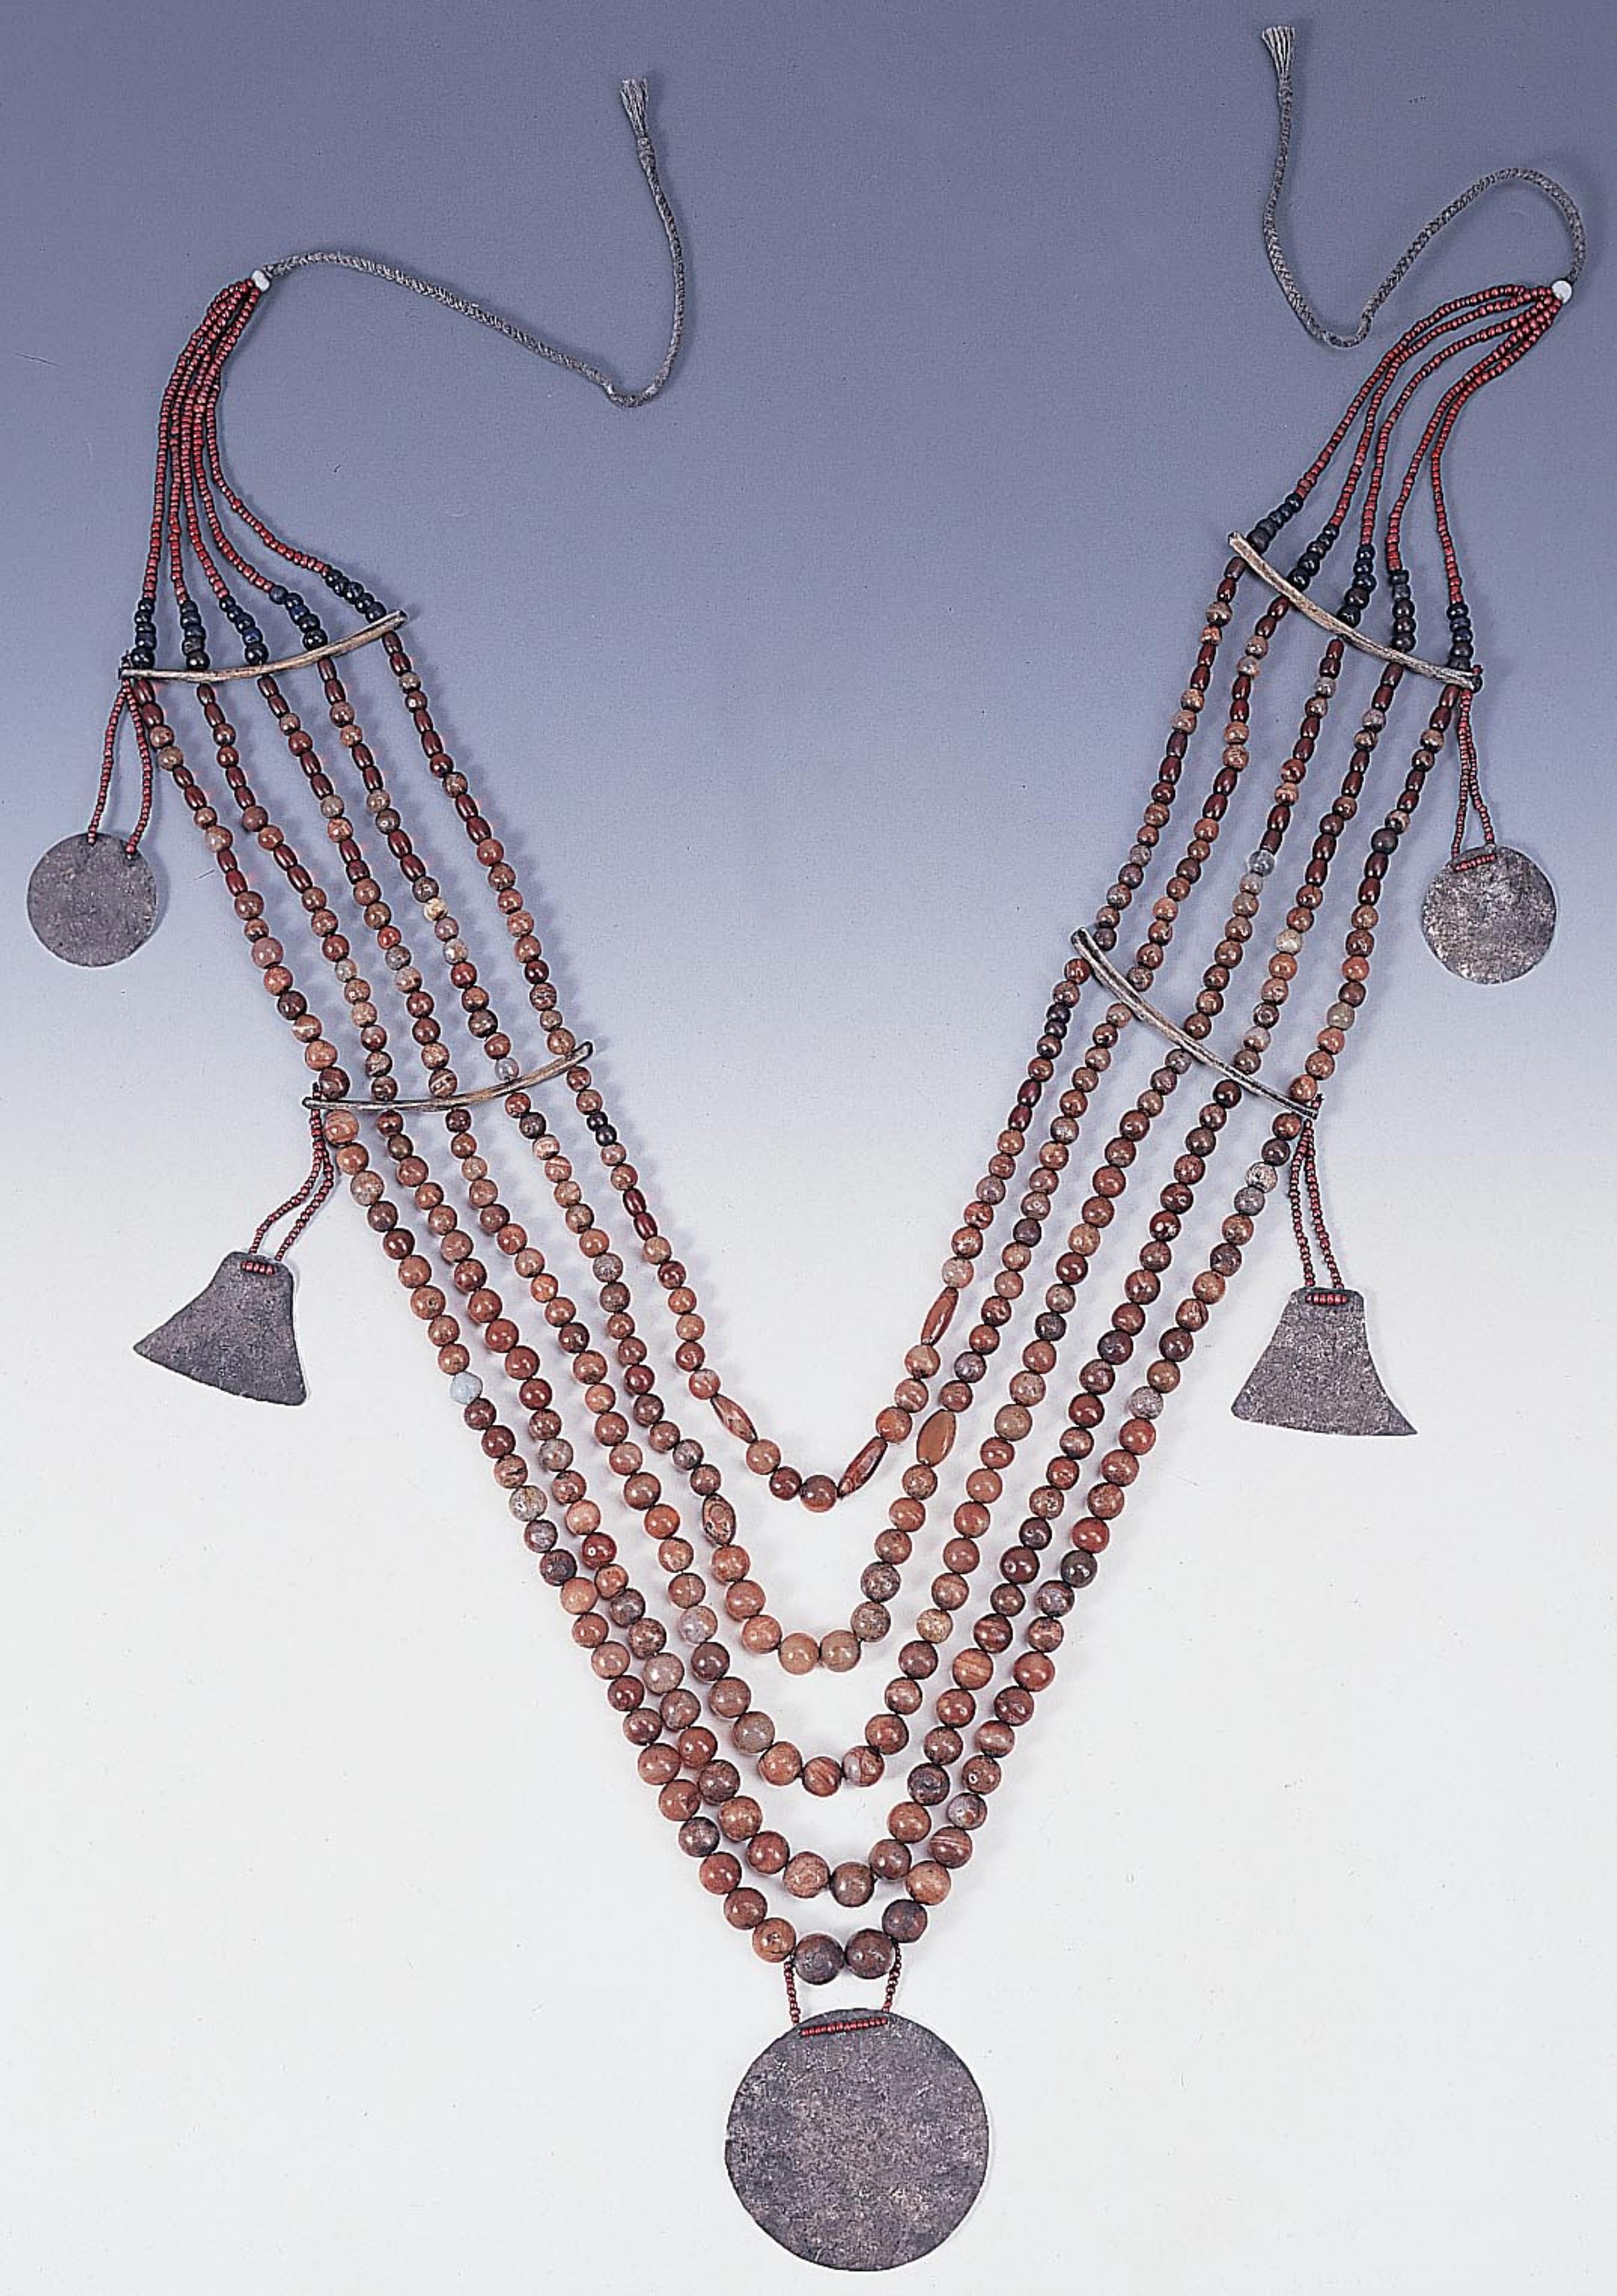 達悟族女用瑪瑙珠胸飾 (共5張)